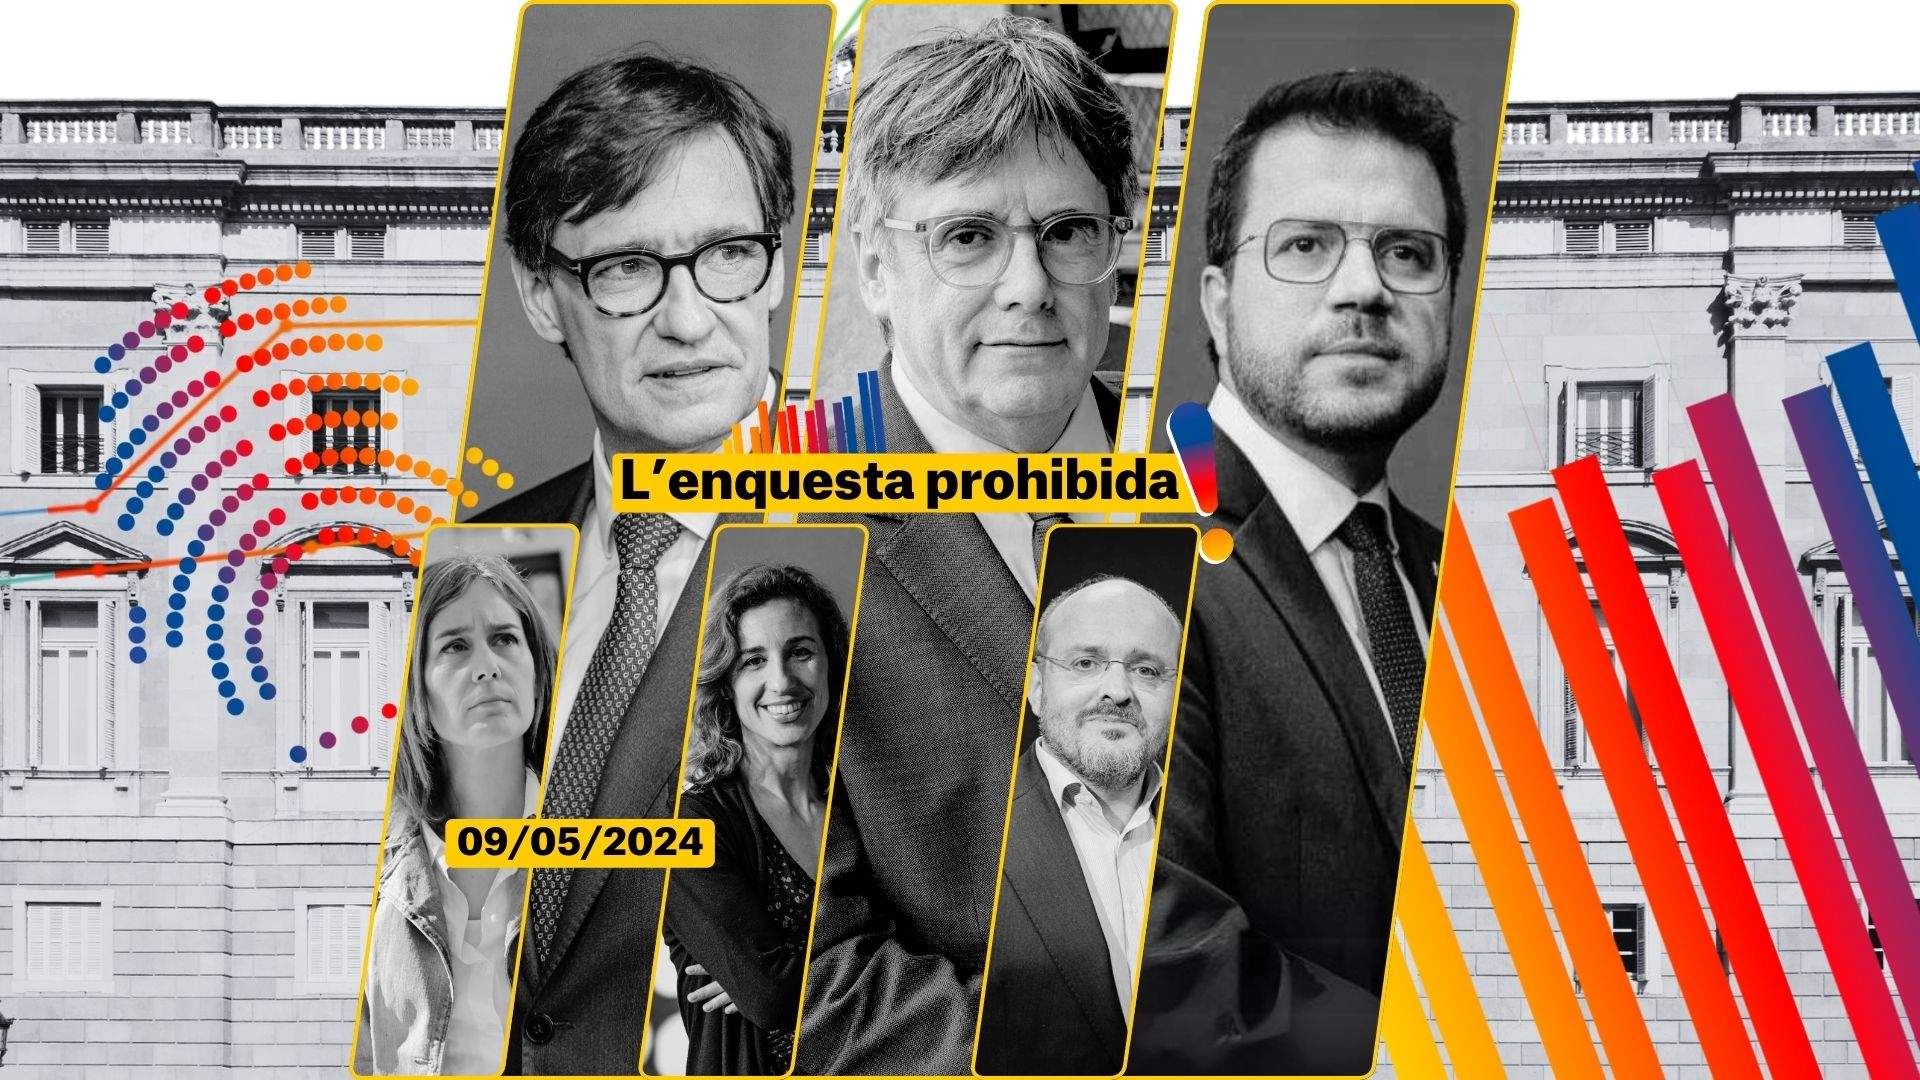 Enquesta eleccions Catalunya 2024   Enquesta prohibida 9 maig